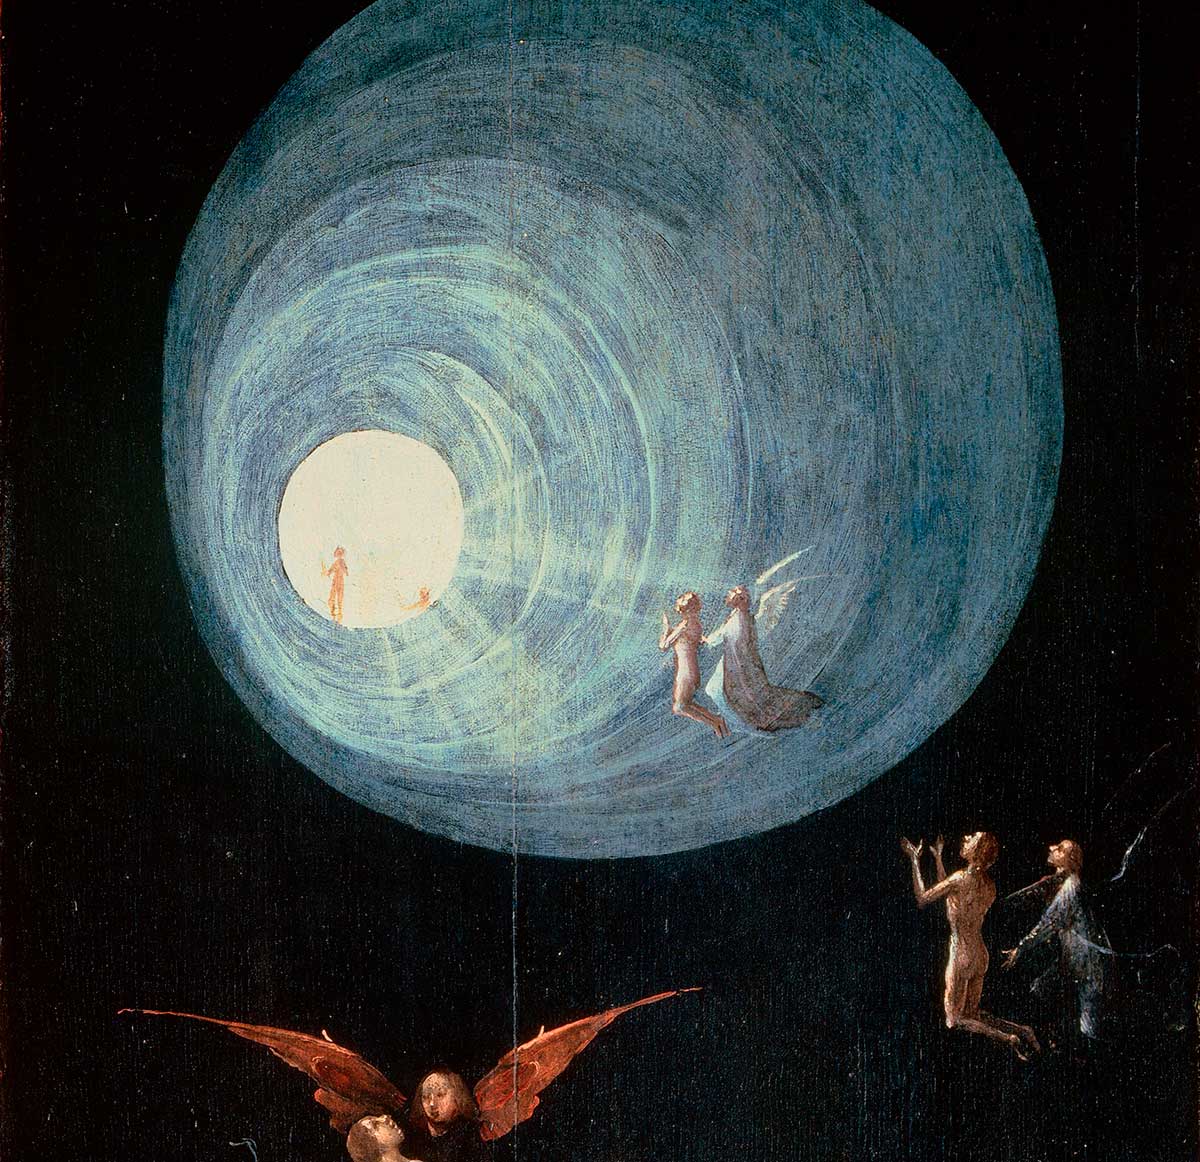 La Ascensión del Beato es una pintura de Hieronymus Bosch realizada entre 1505 y 1515.